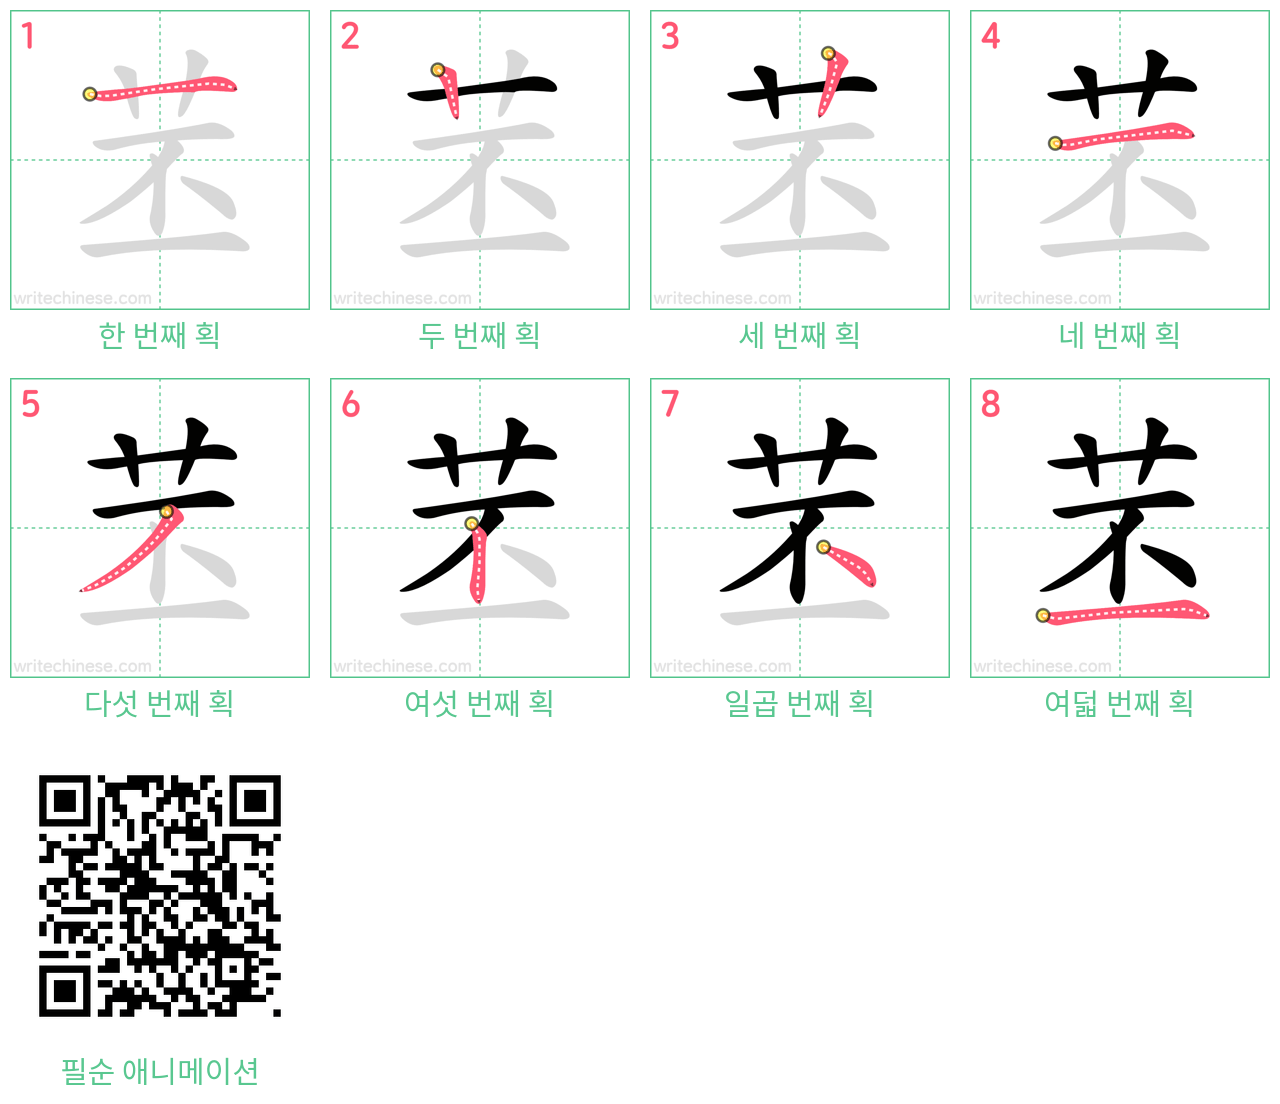 苤 step-by-step stroke order diagrams